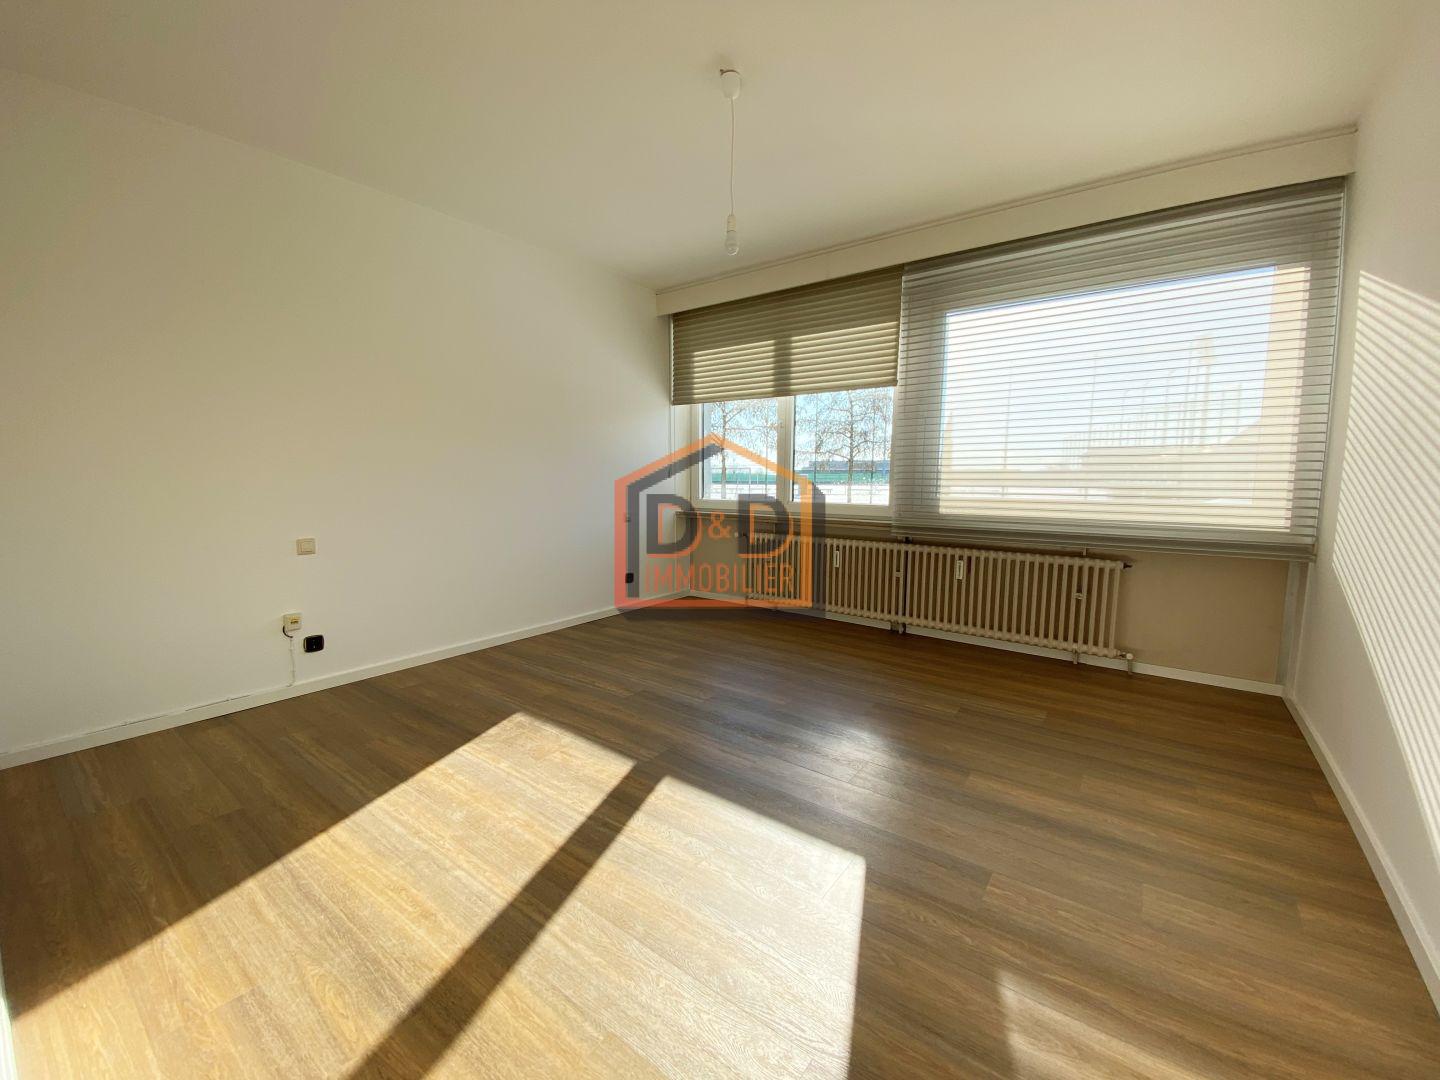 Appartement à Luxembourg-Limpertsberg, 100 m², 2 chambres, 1 salle de bain, 1 750 €/mois